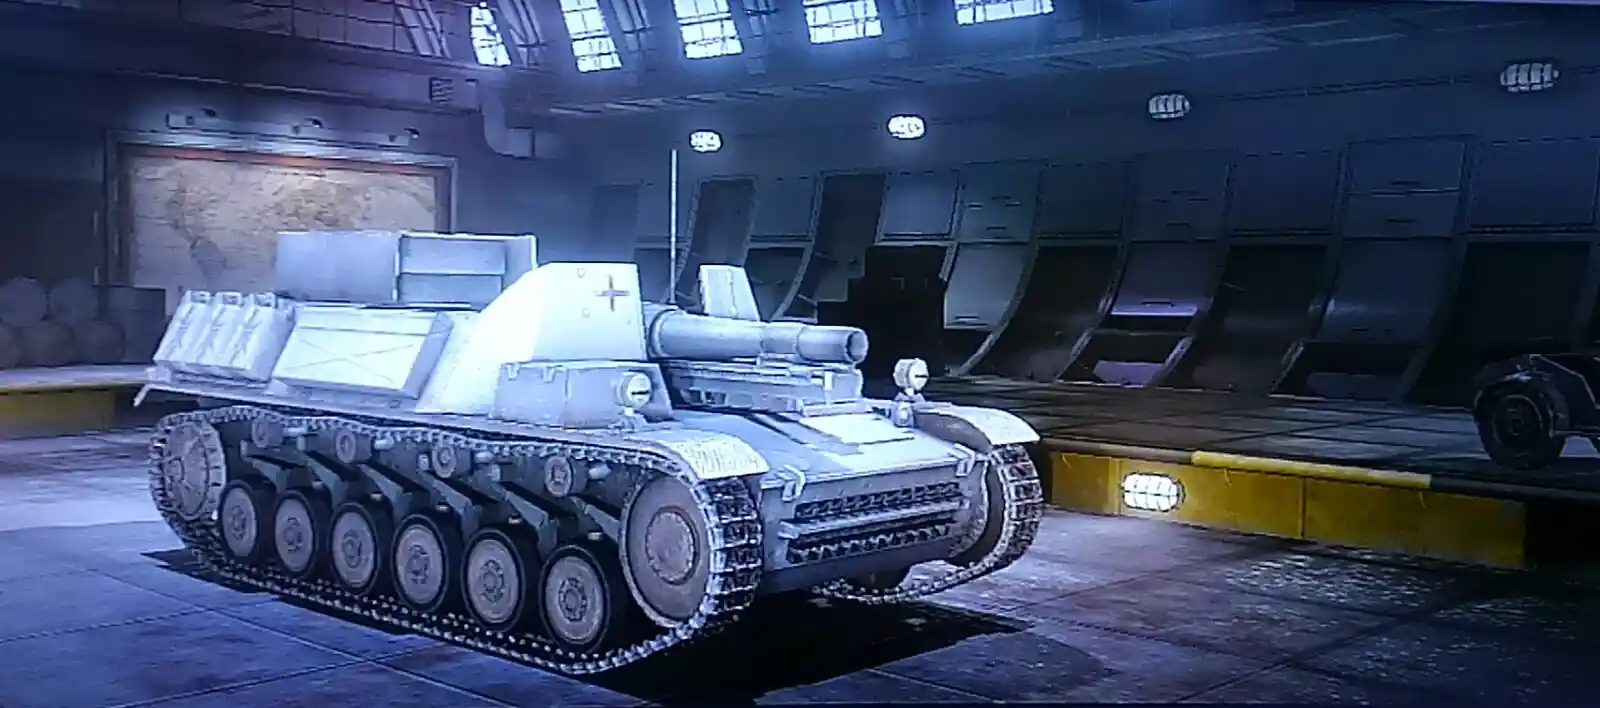 1_Sturmpanzer_II.jpg